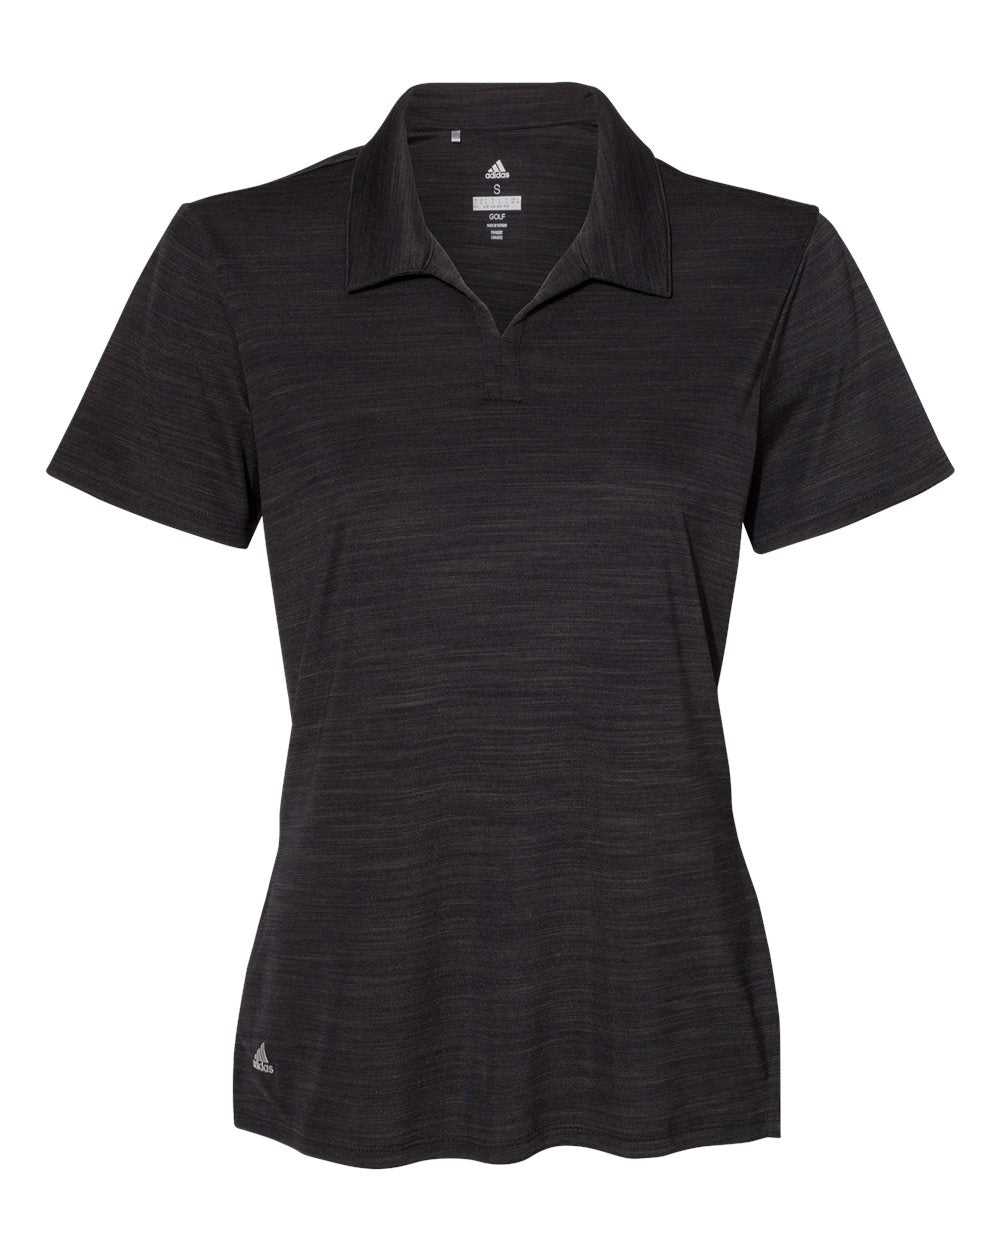 Adidas A403 Women&#39;s M??lange Sport Shirt - Black Melange - HIT a Double